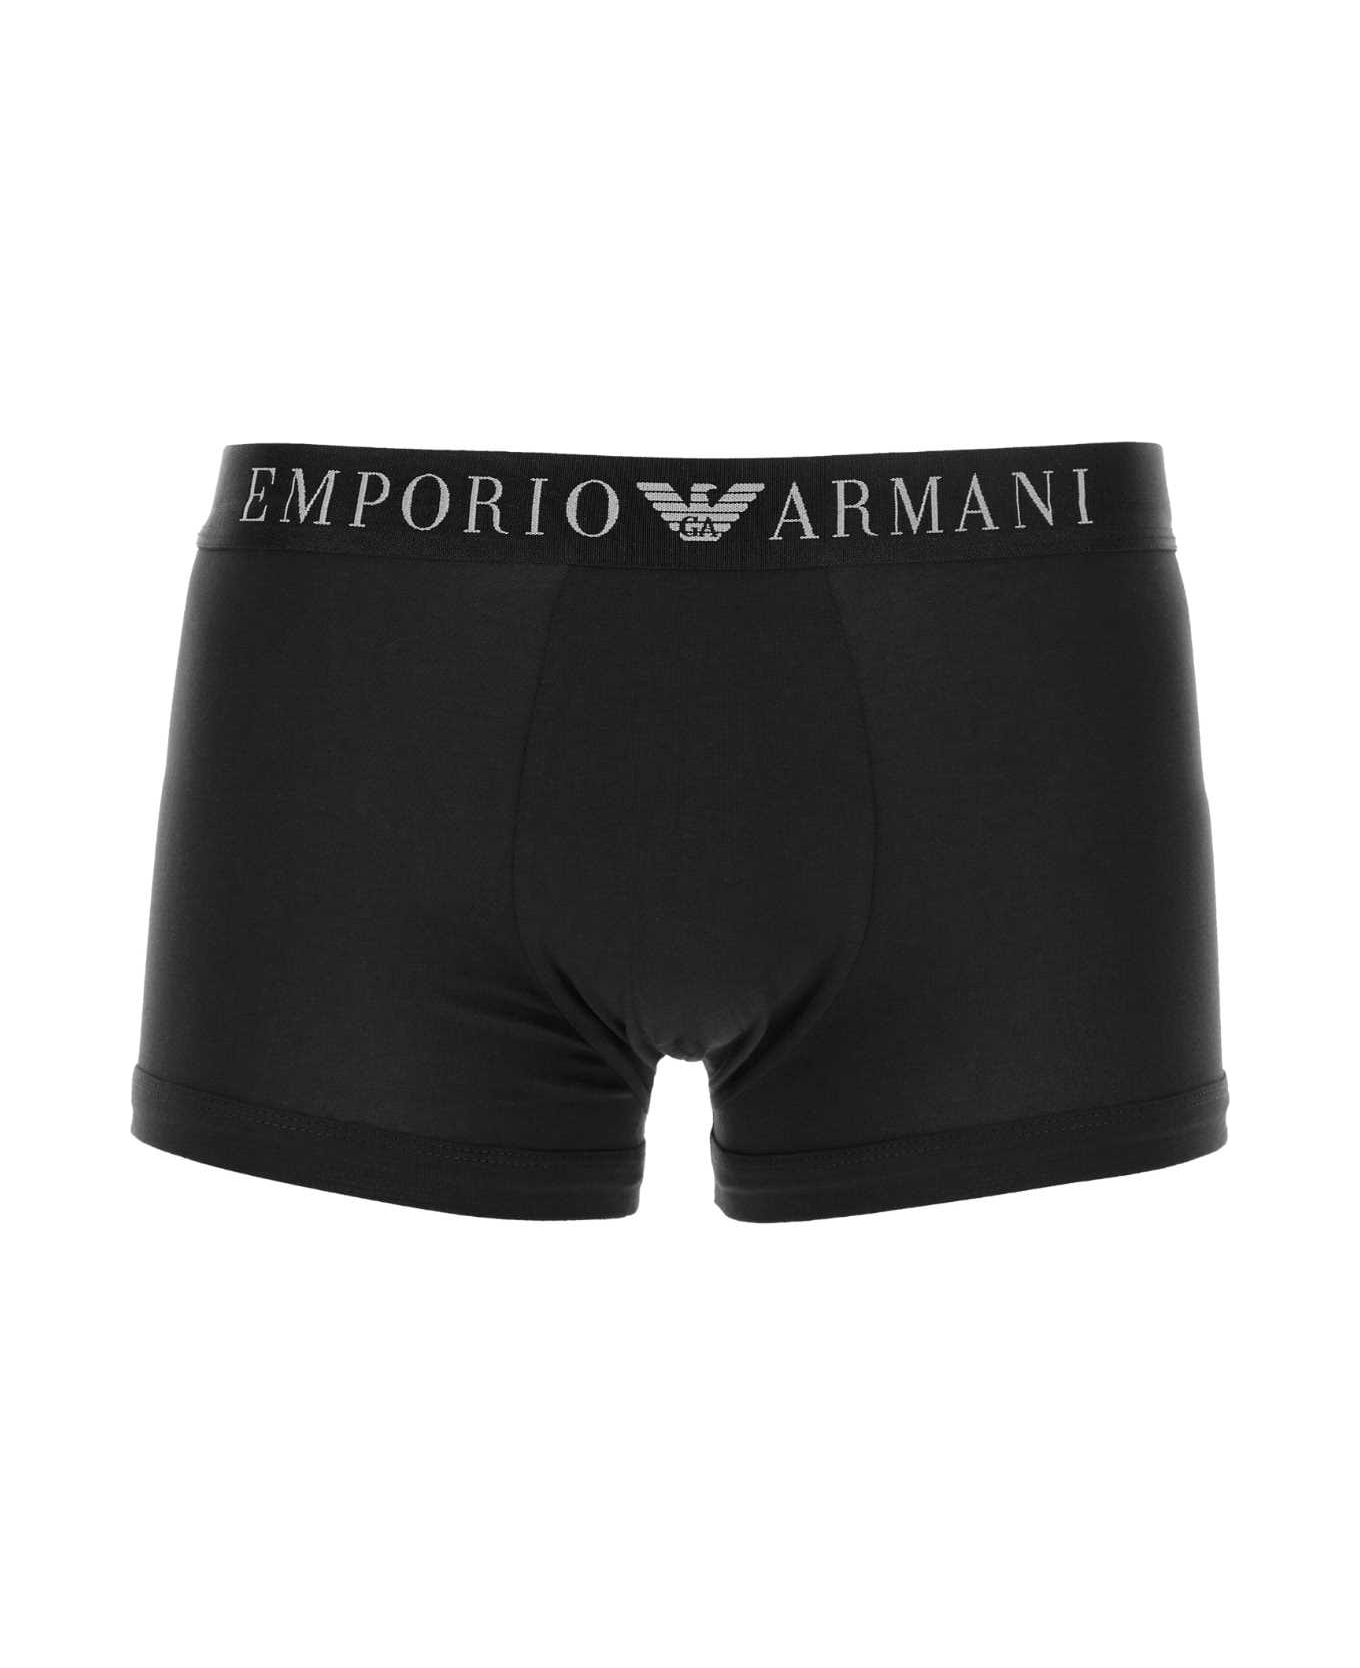 Emporio Armani Black Stretch Cotton Boxer - 00020 アンダーウェア